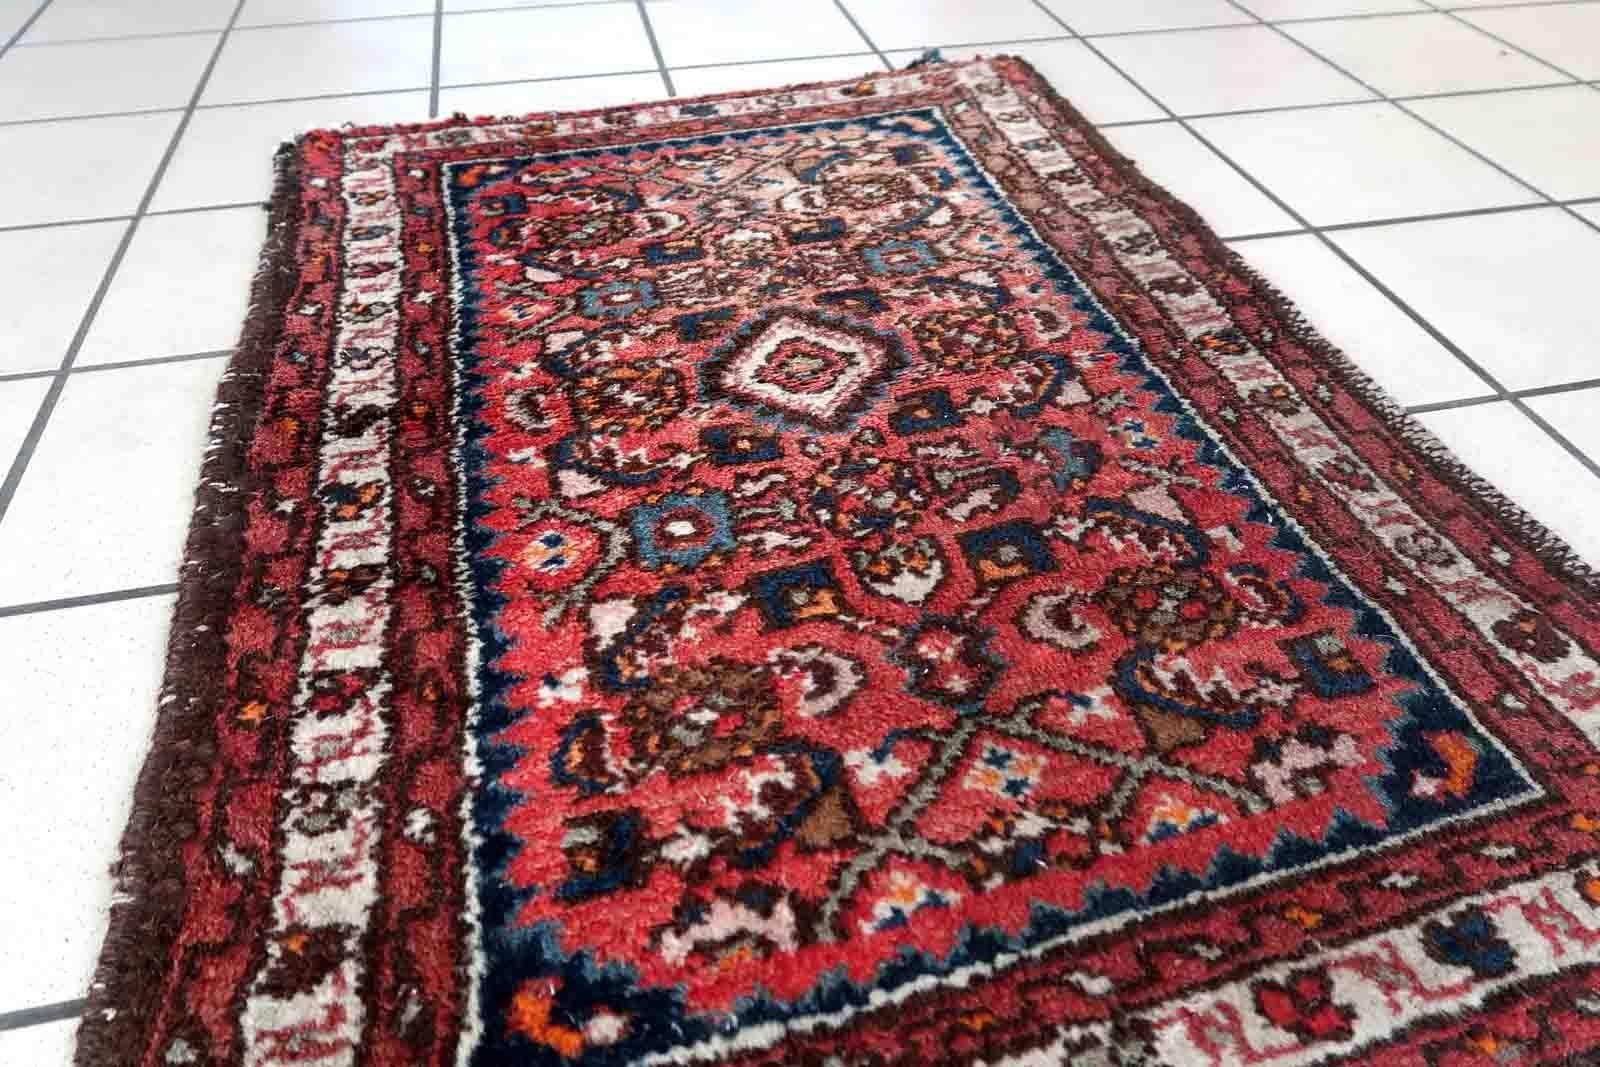 Handgefertigter Vintage-Teppich aus Hamadan mit Medaillon-Muster. Der Teppich ist in einem guten Originalzustand vom Ende des 20. Jahrhunderts.

-Zustand: original, einige Altersspuren,

-Umgebung: 1970er Jahre,

-Größe: 2' x 2.8' (62cm x